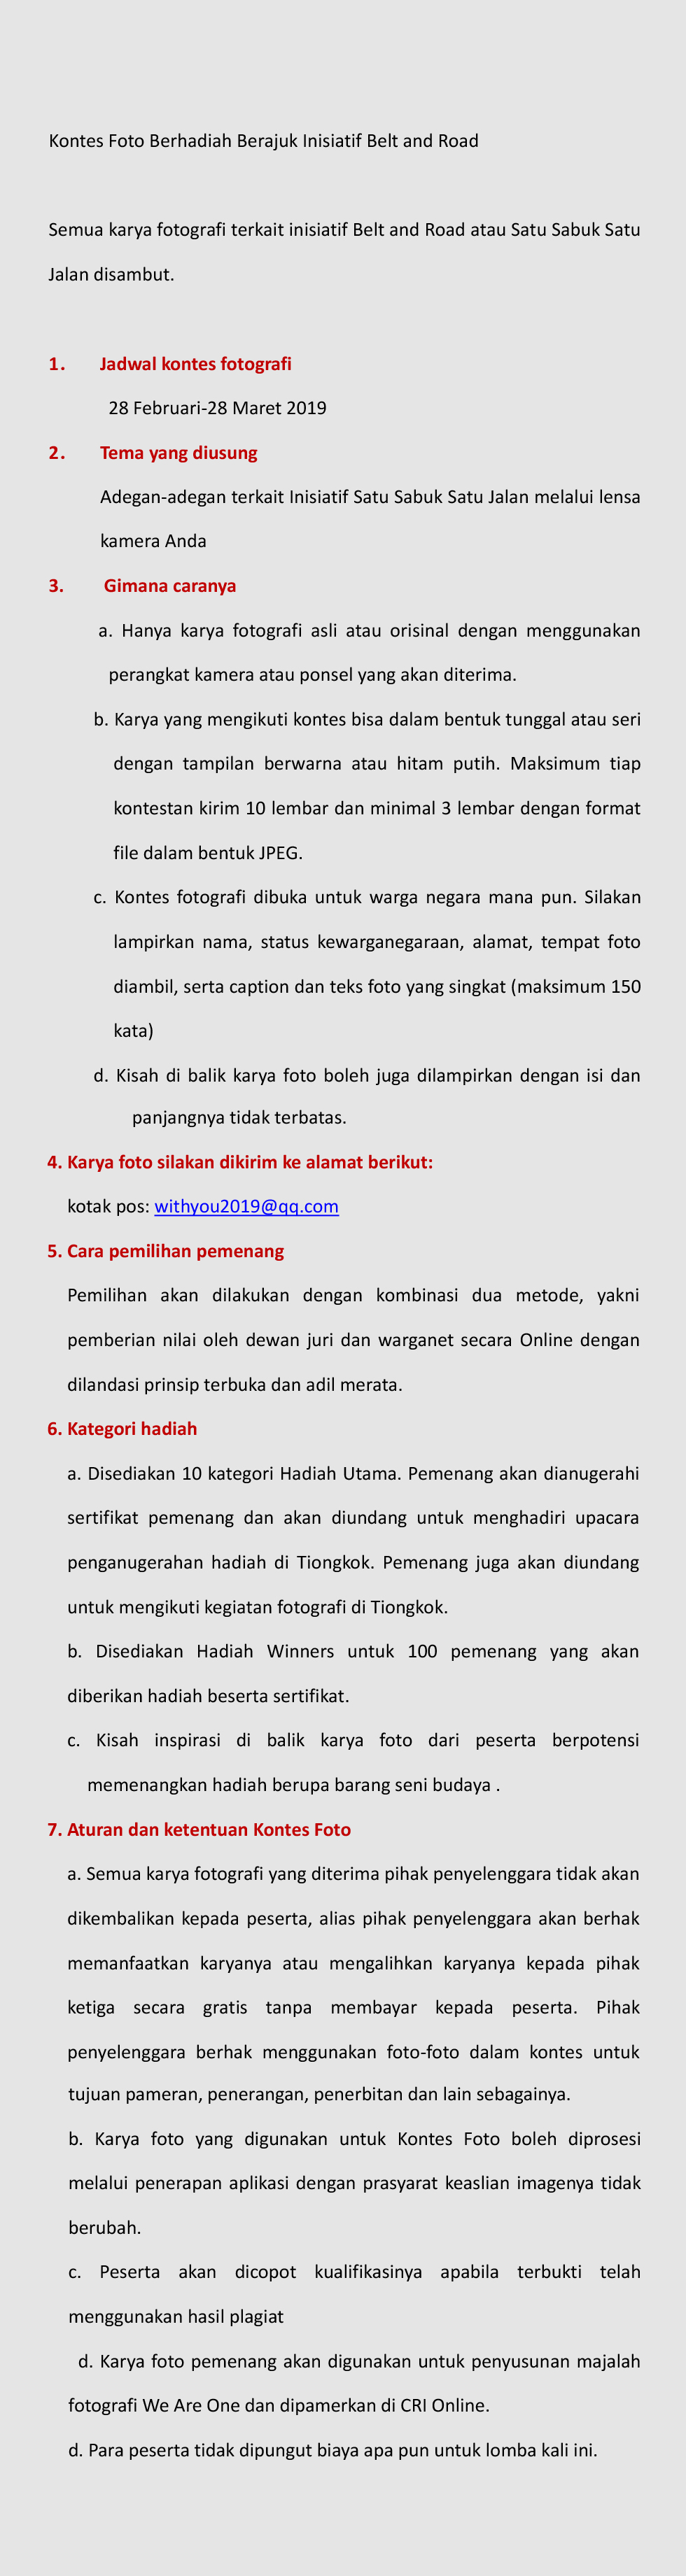 文案圖_fororder_Text-印尼